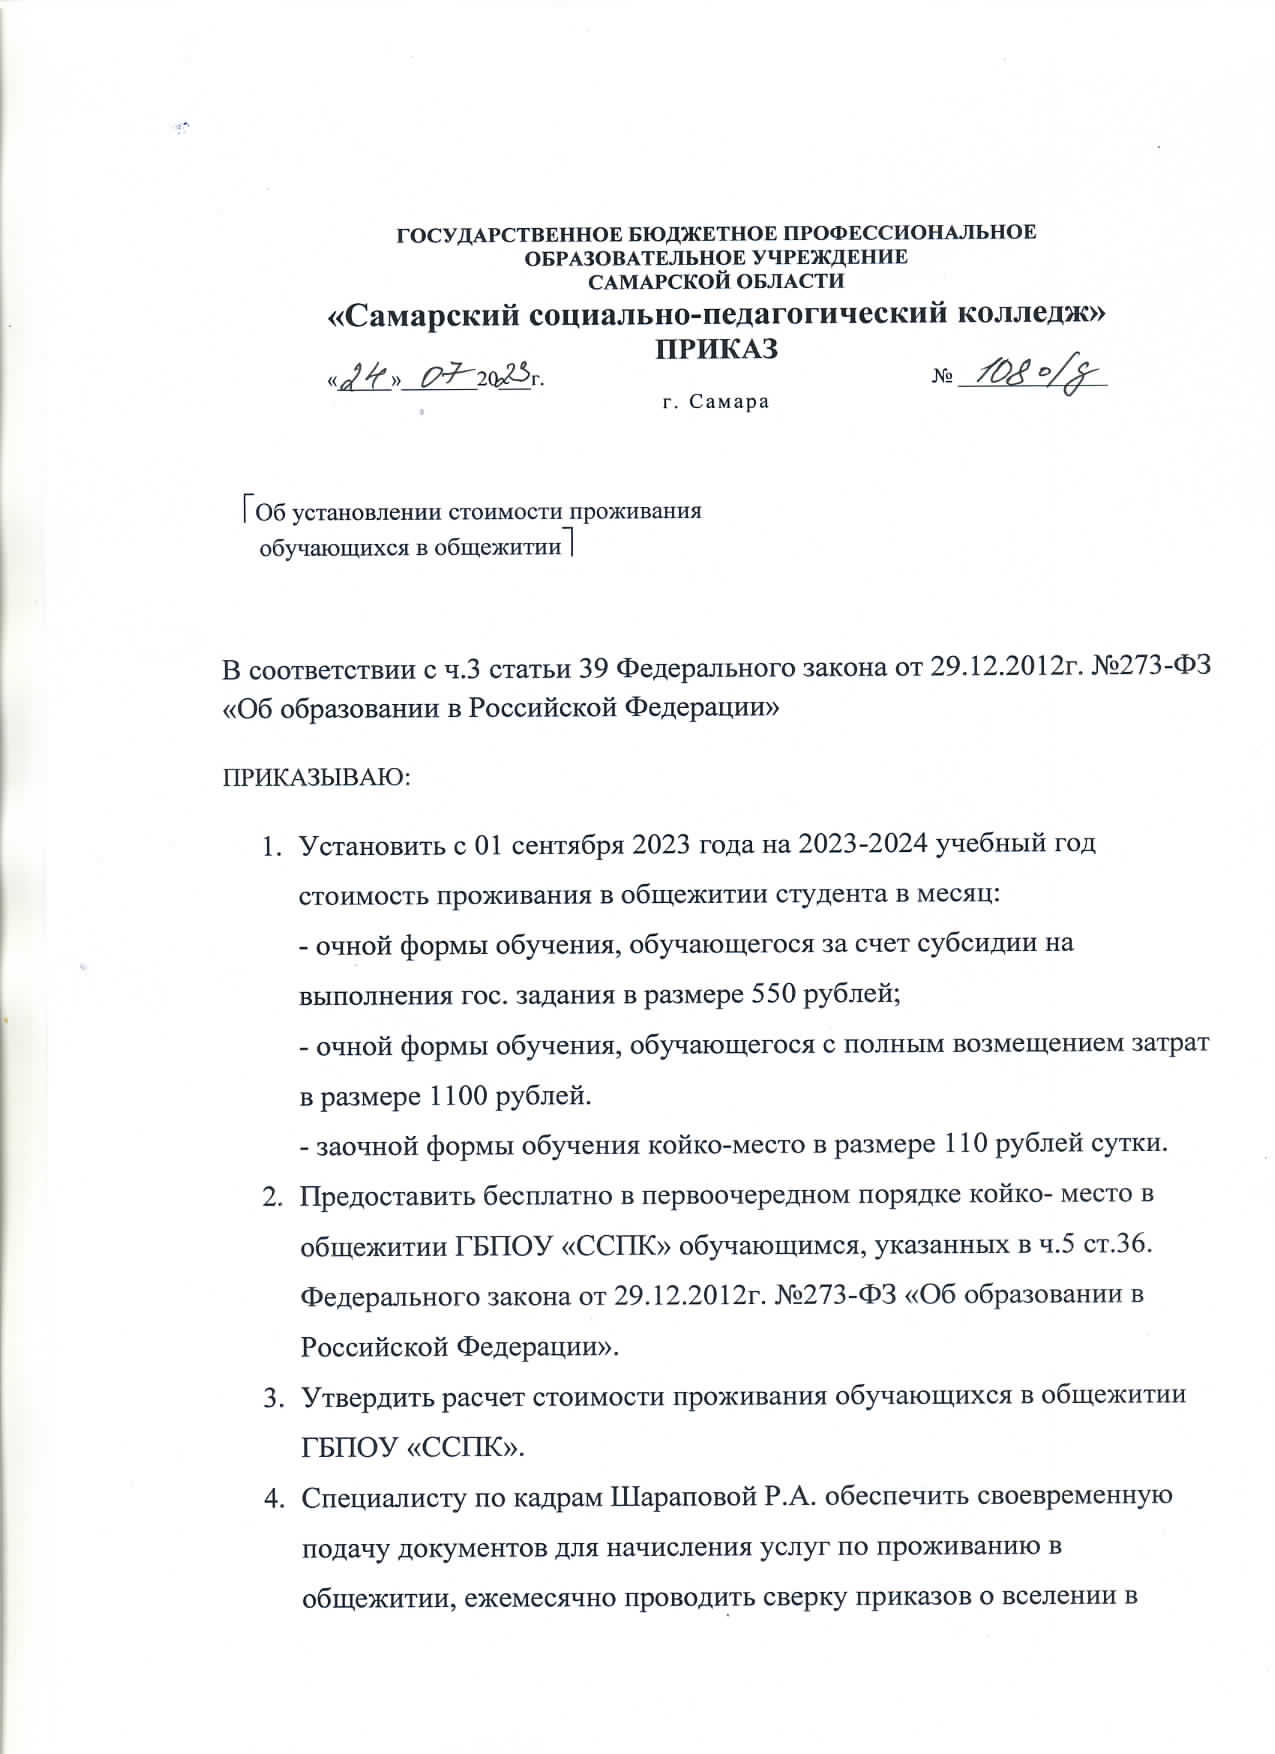 thumbnail of Prikaz o stoimosti obshchezhitiya 2023-24